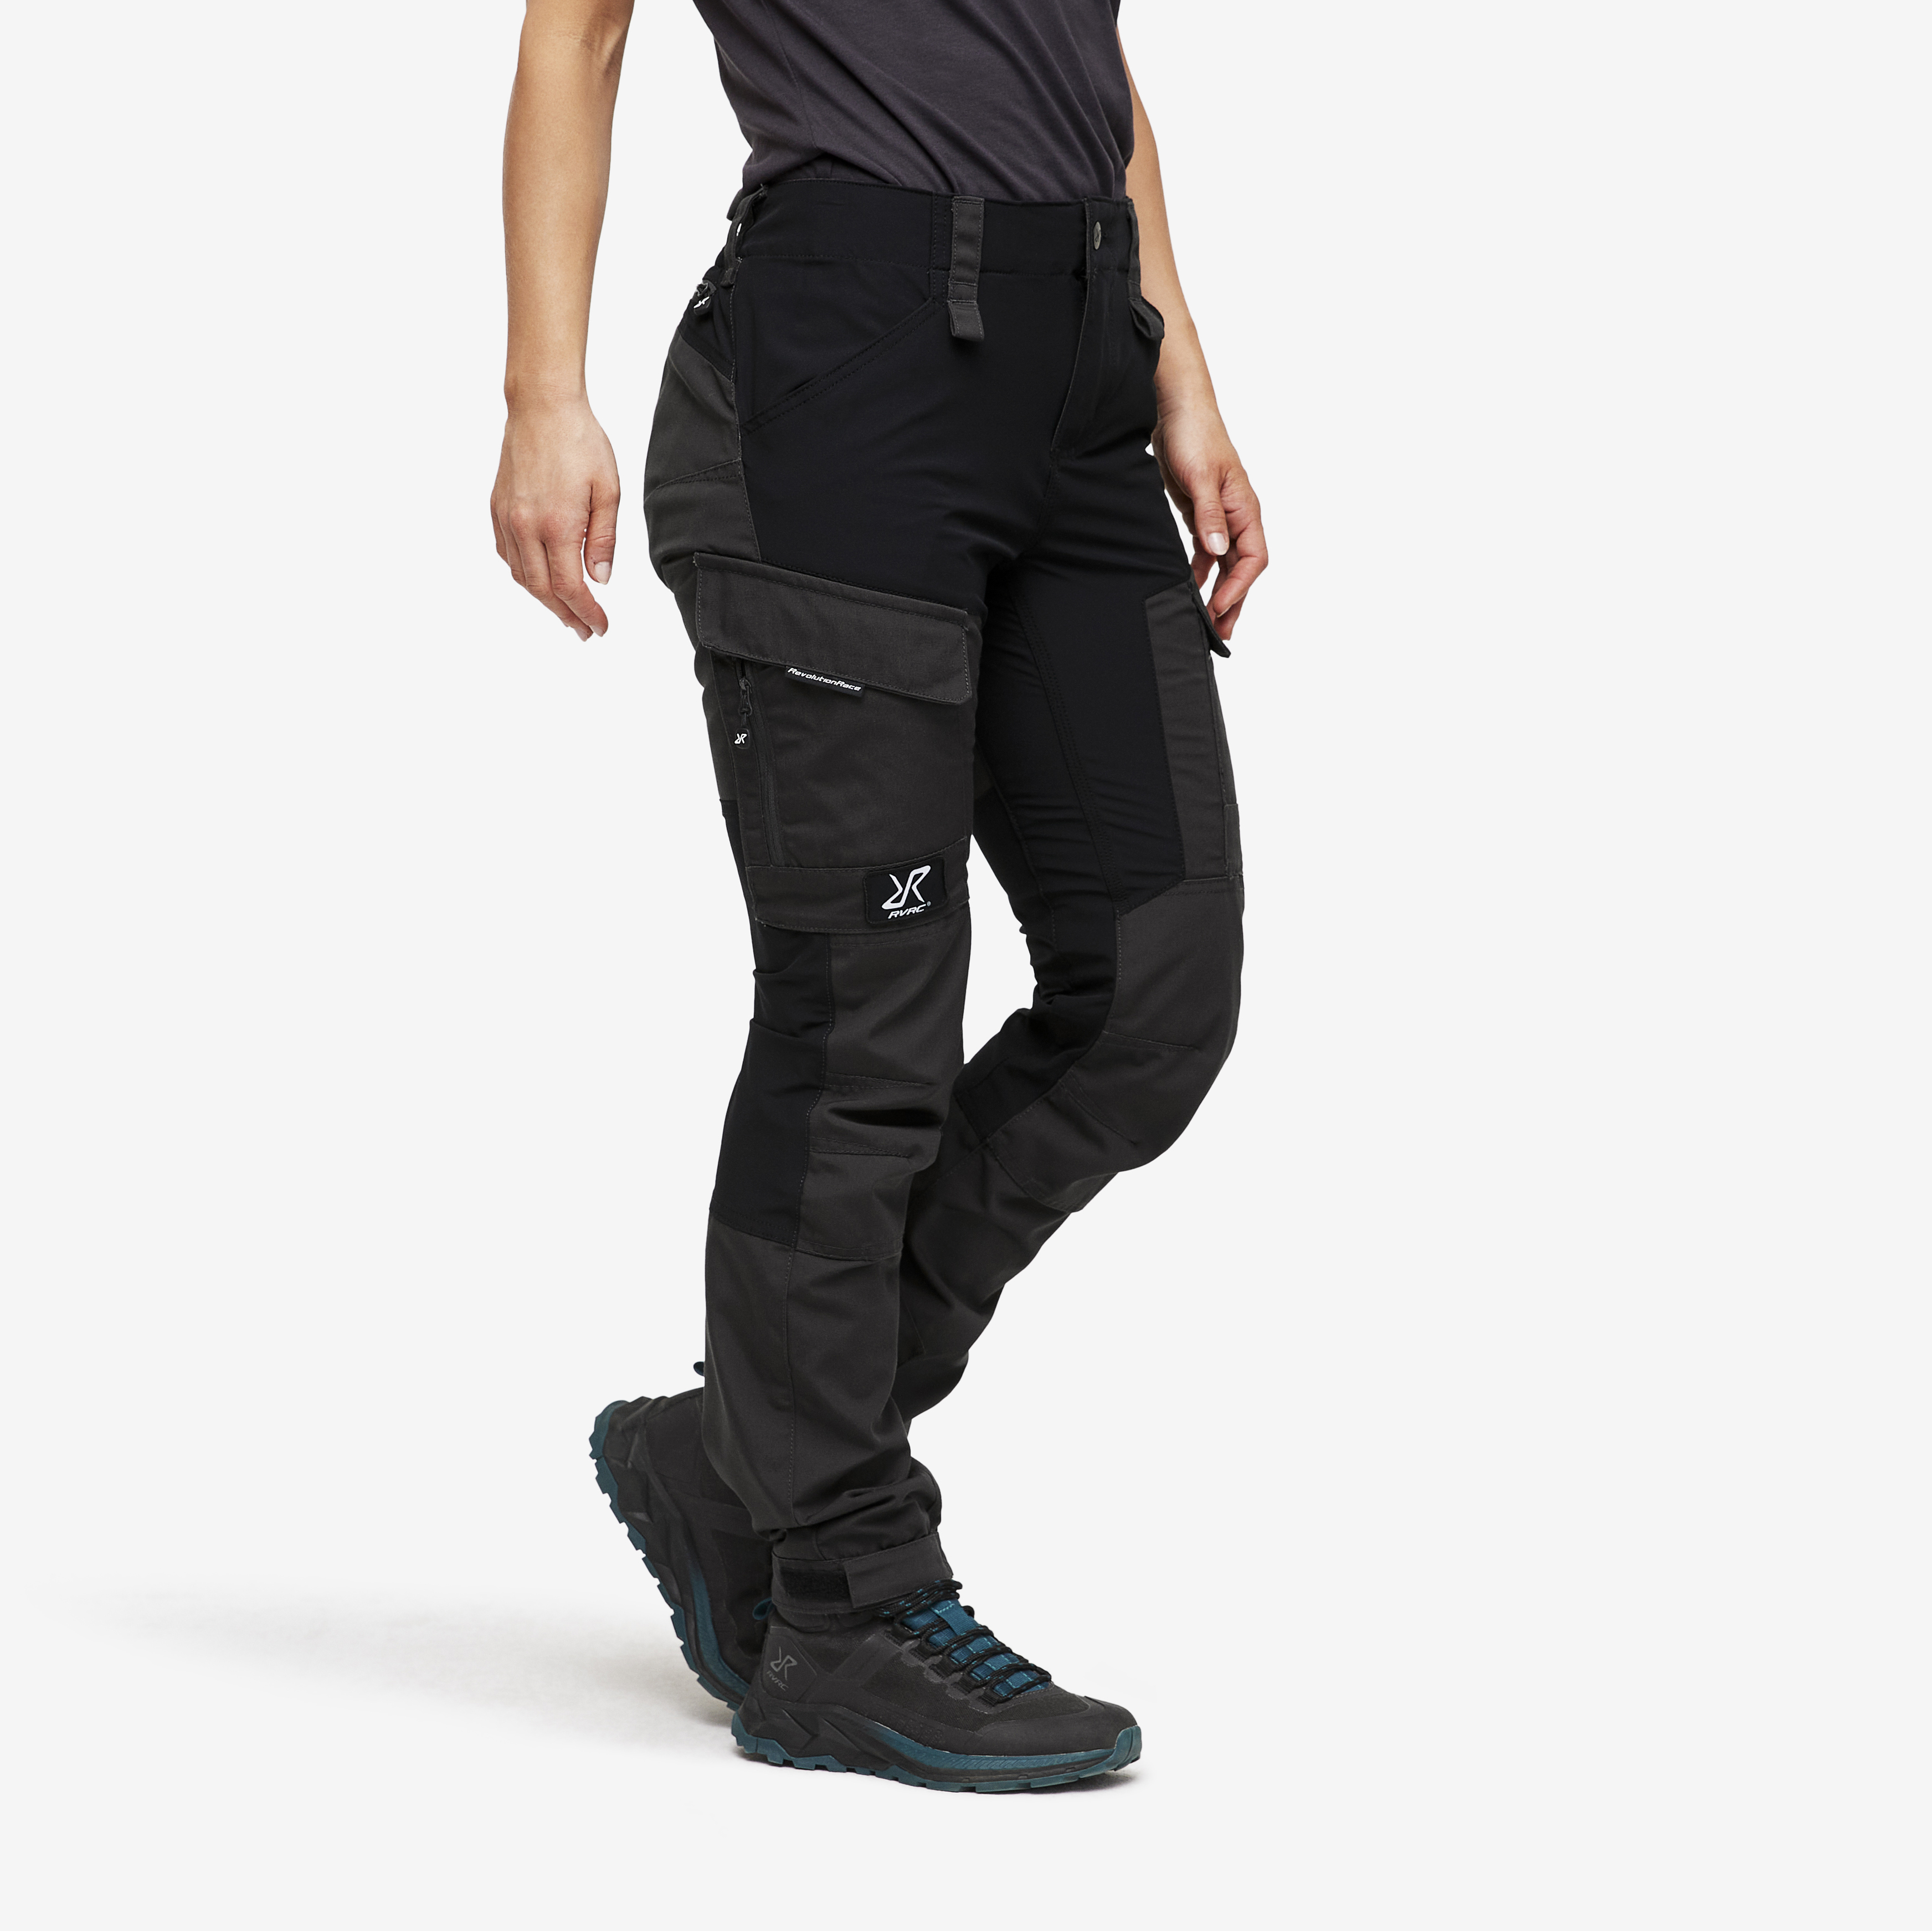 RVRC GP Short outdoorové kalhoty pro ženy v černé barvě